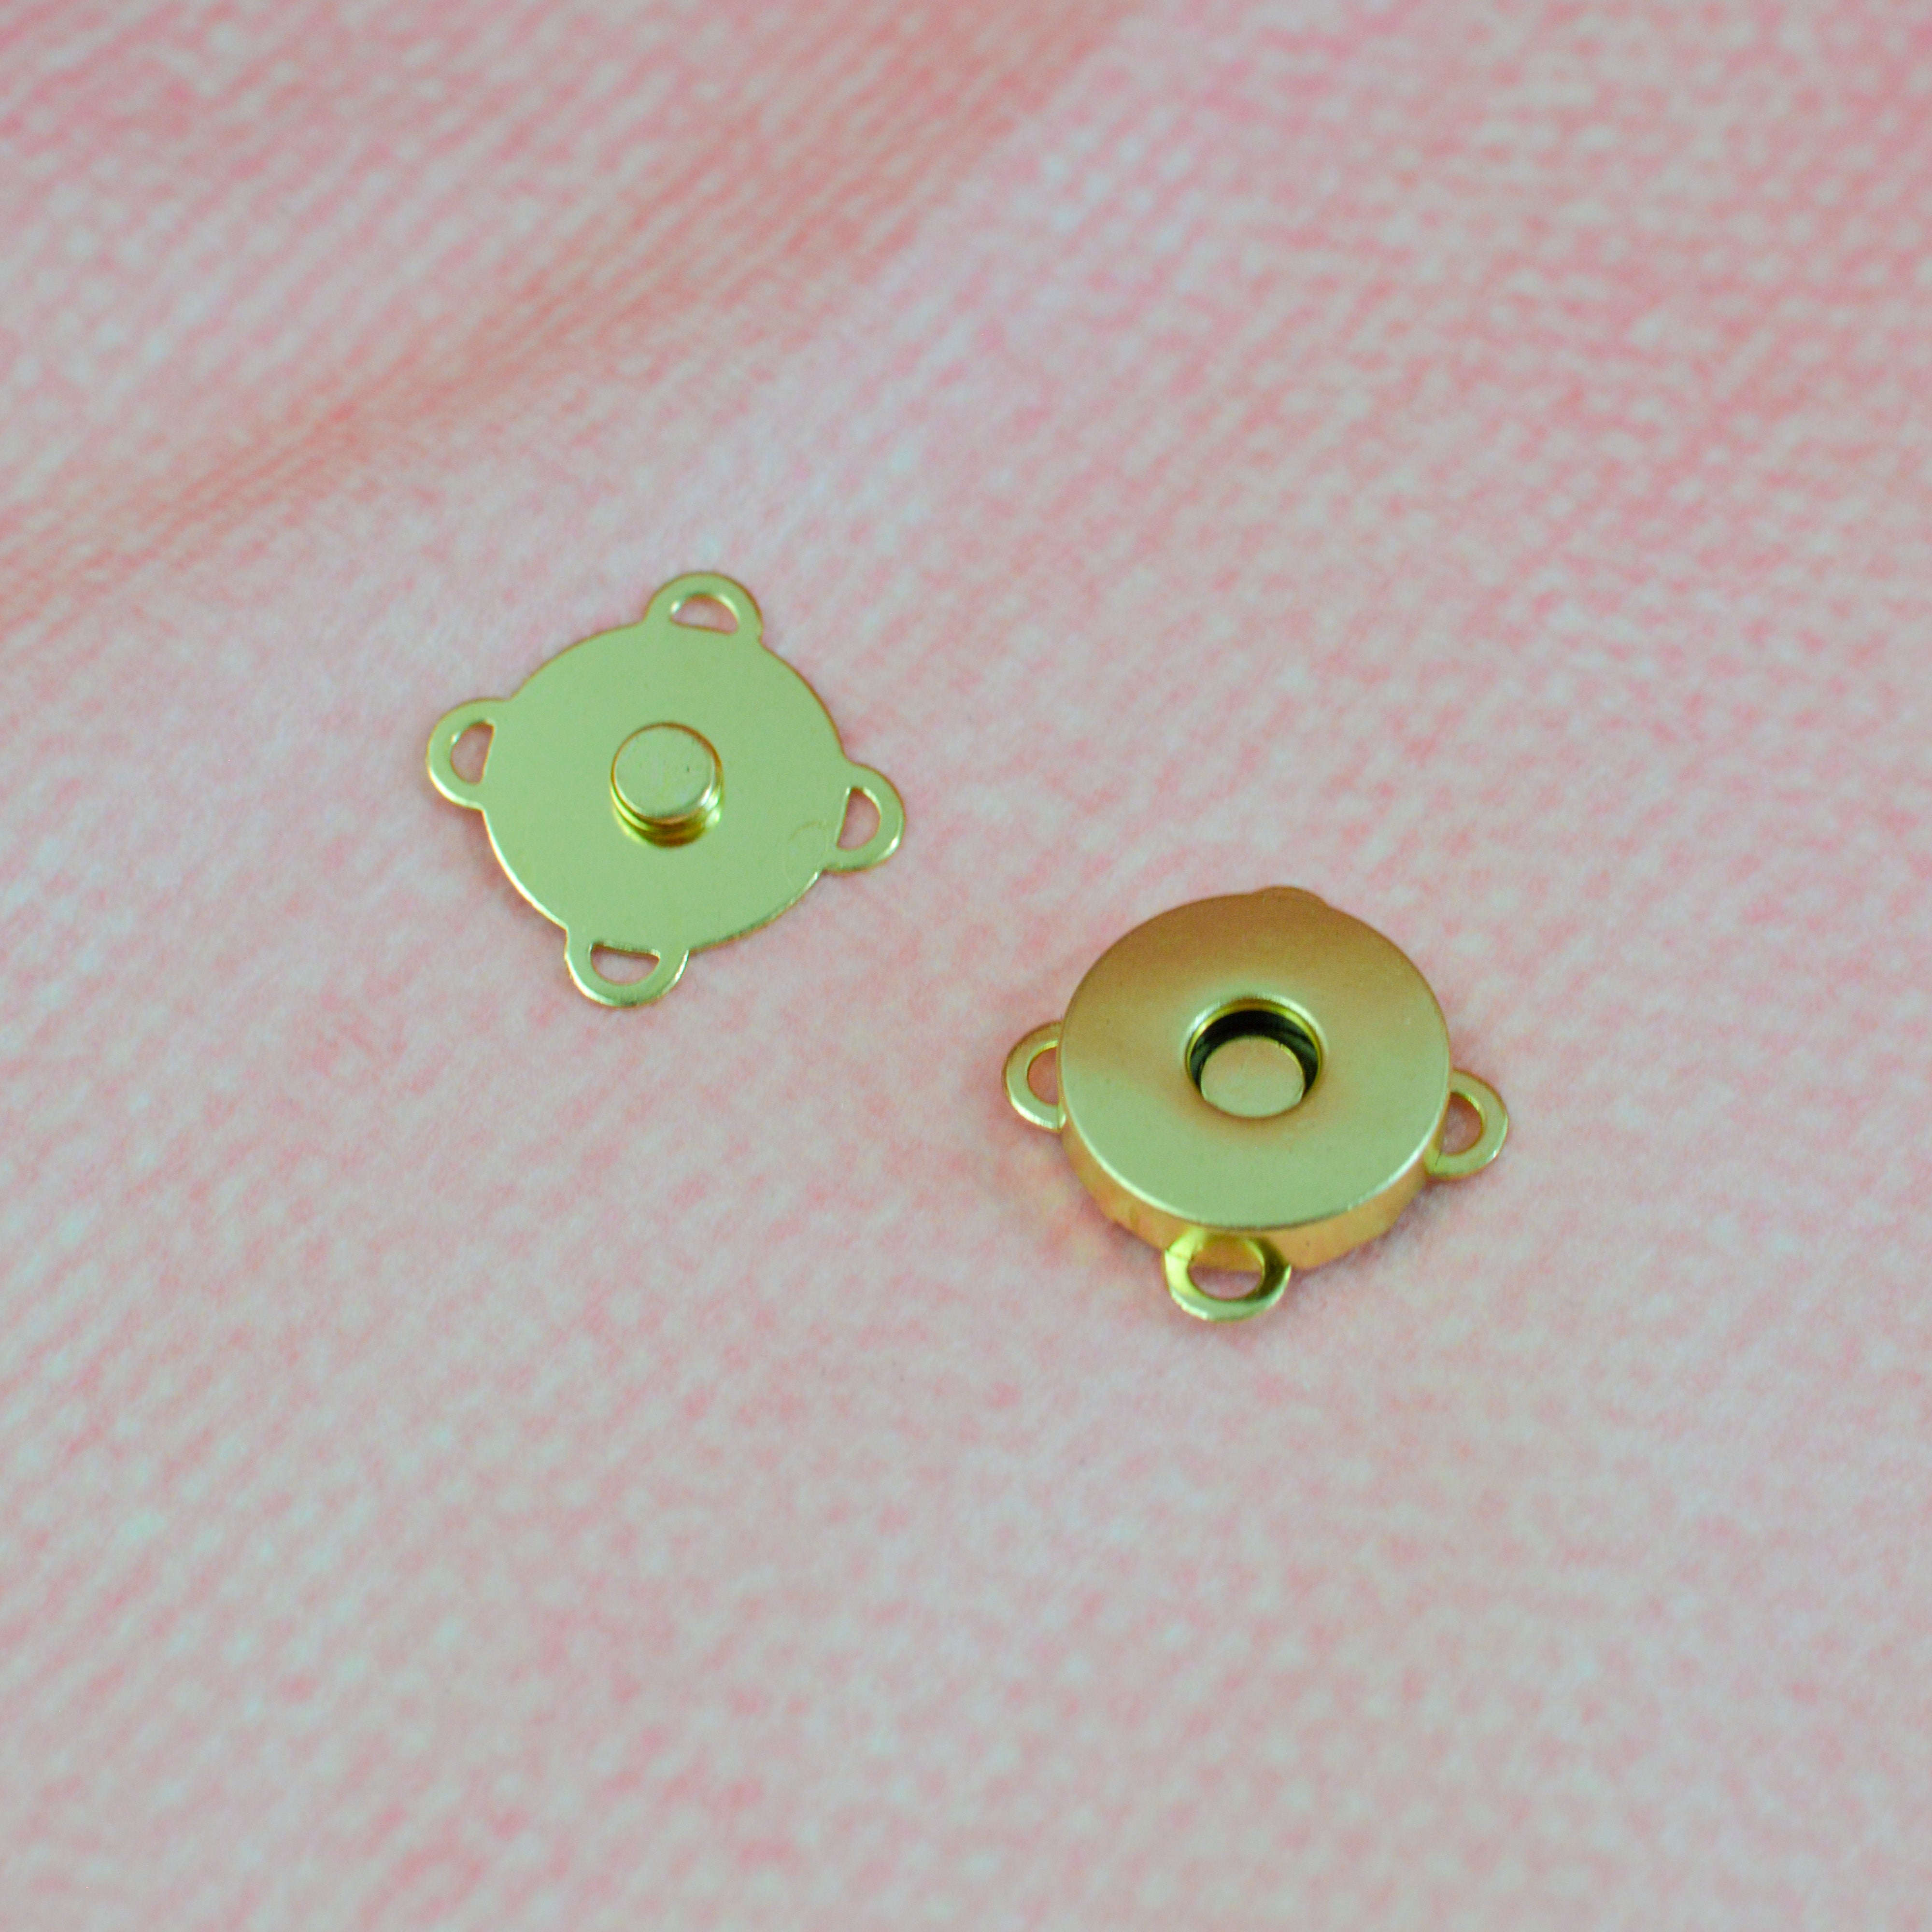 Magnetverschluß rund Gold 18 mm Stück poshpinks